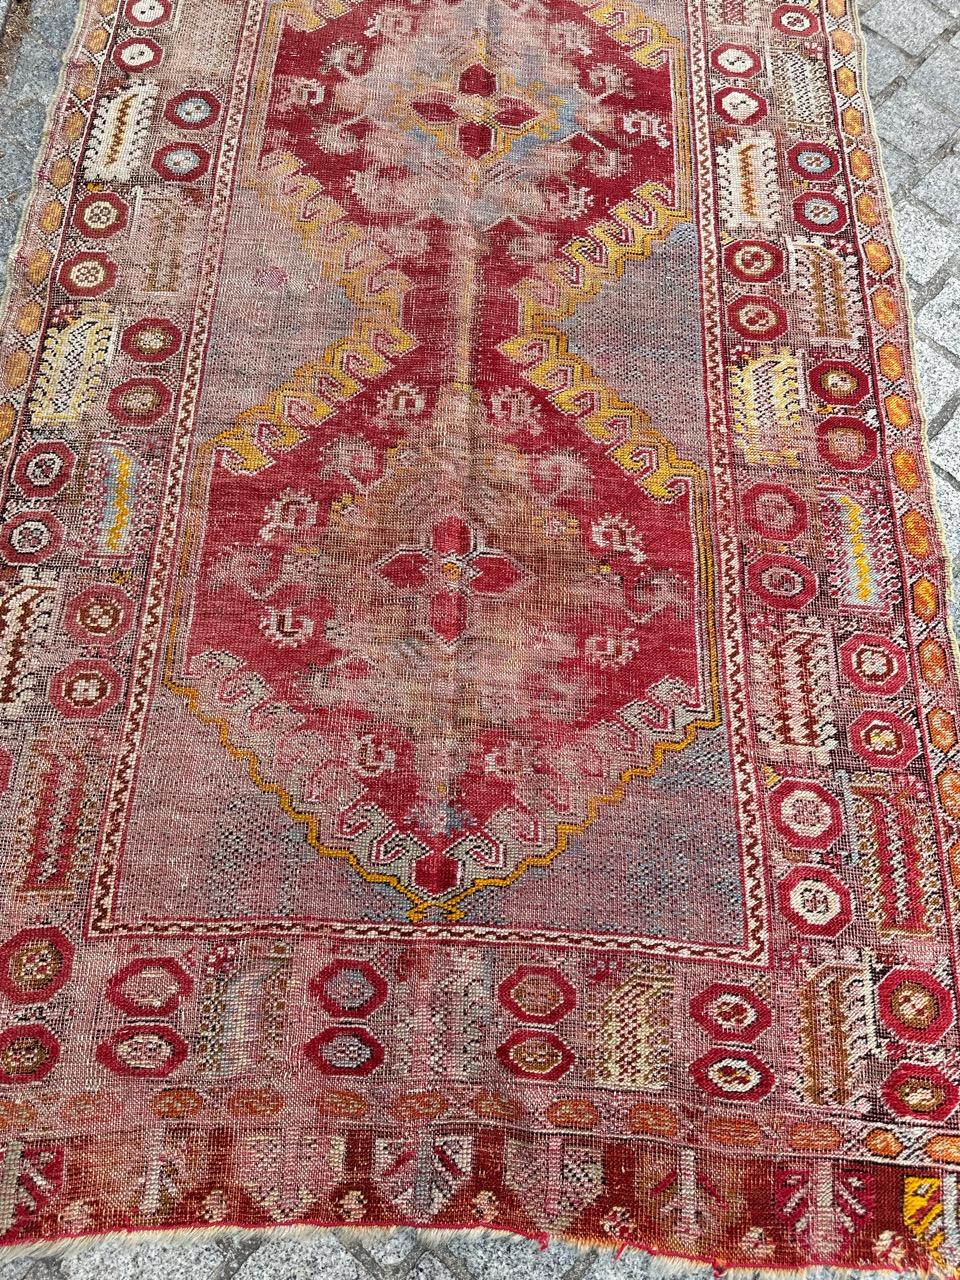 Voici un magnifique chemin de table antique turc d'Anatolie qui présente des motifs complexes rappelant les très anciens tapis turcs, ornés de superbes couleurs naturelles. Cette pièce est méticuleusement nouée à la main avec du velours de laine sur